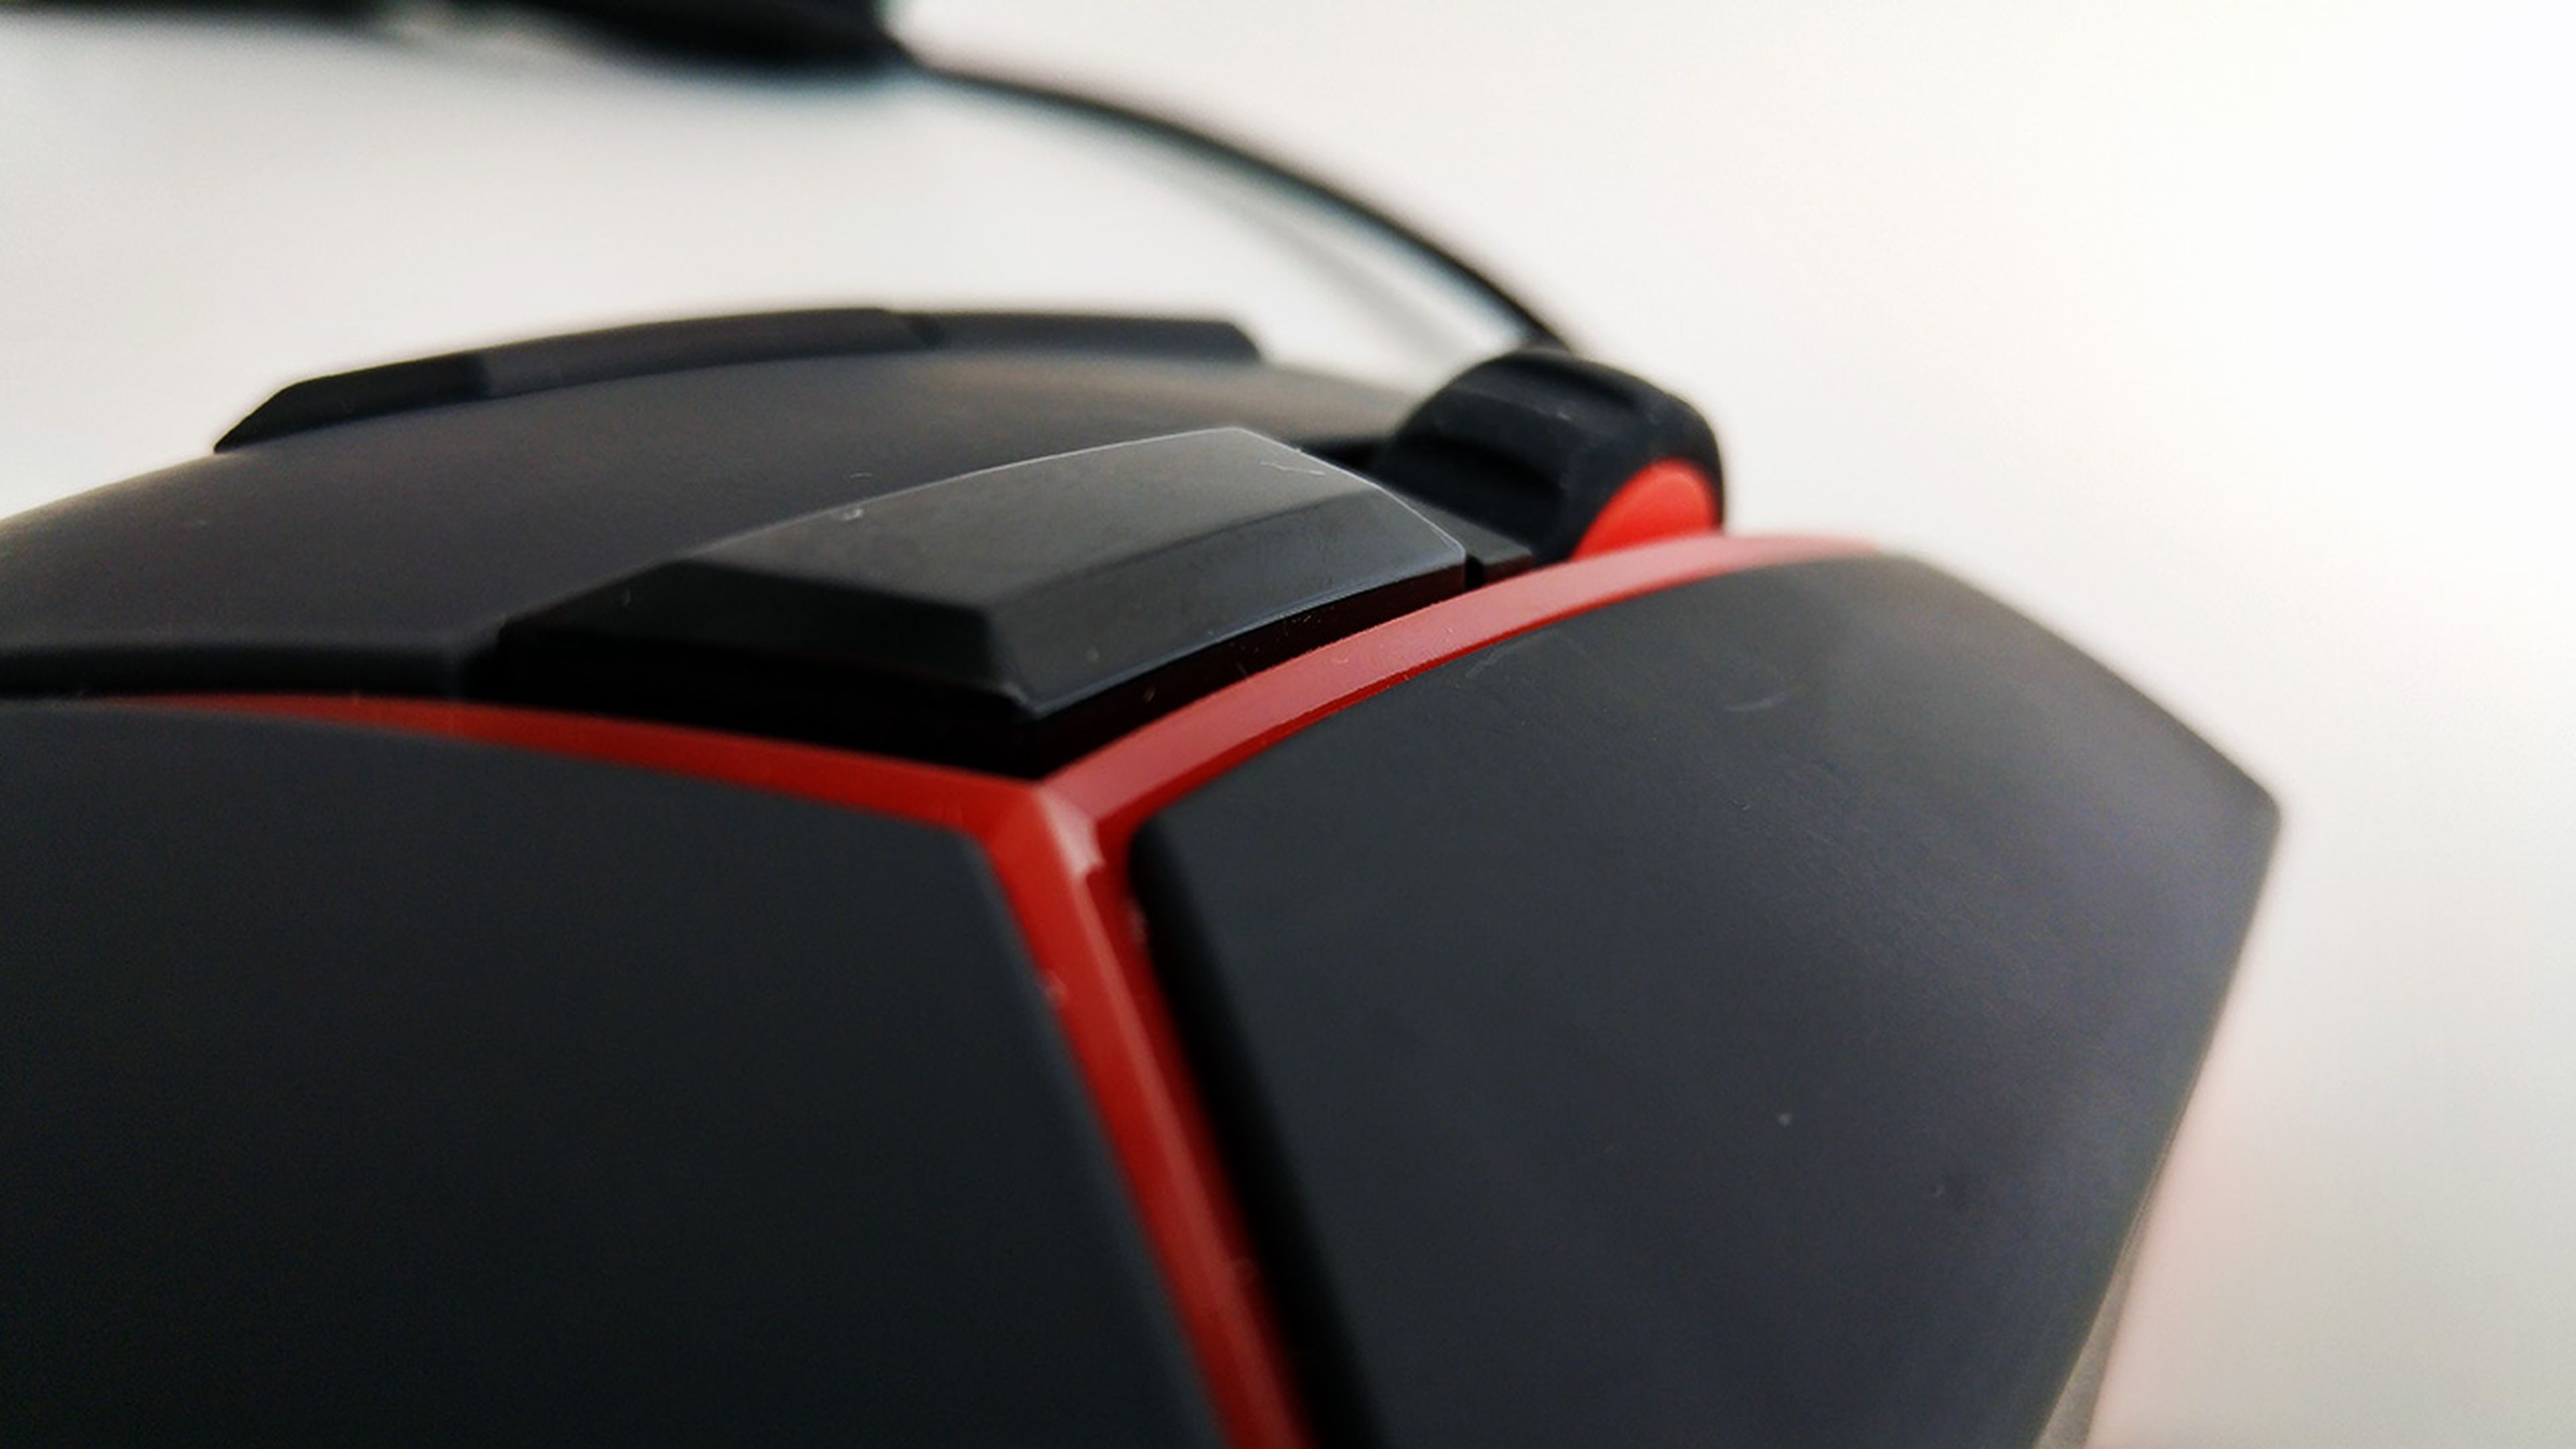 Detalle del Lenovo gaming mouse